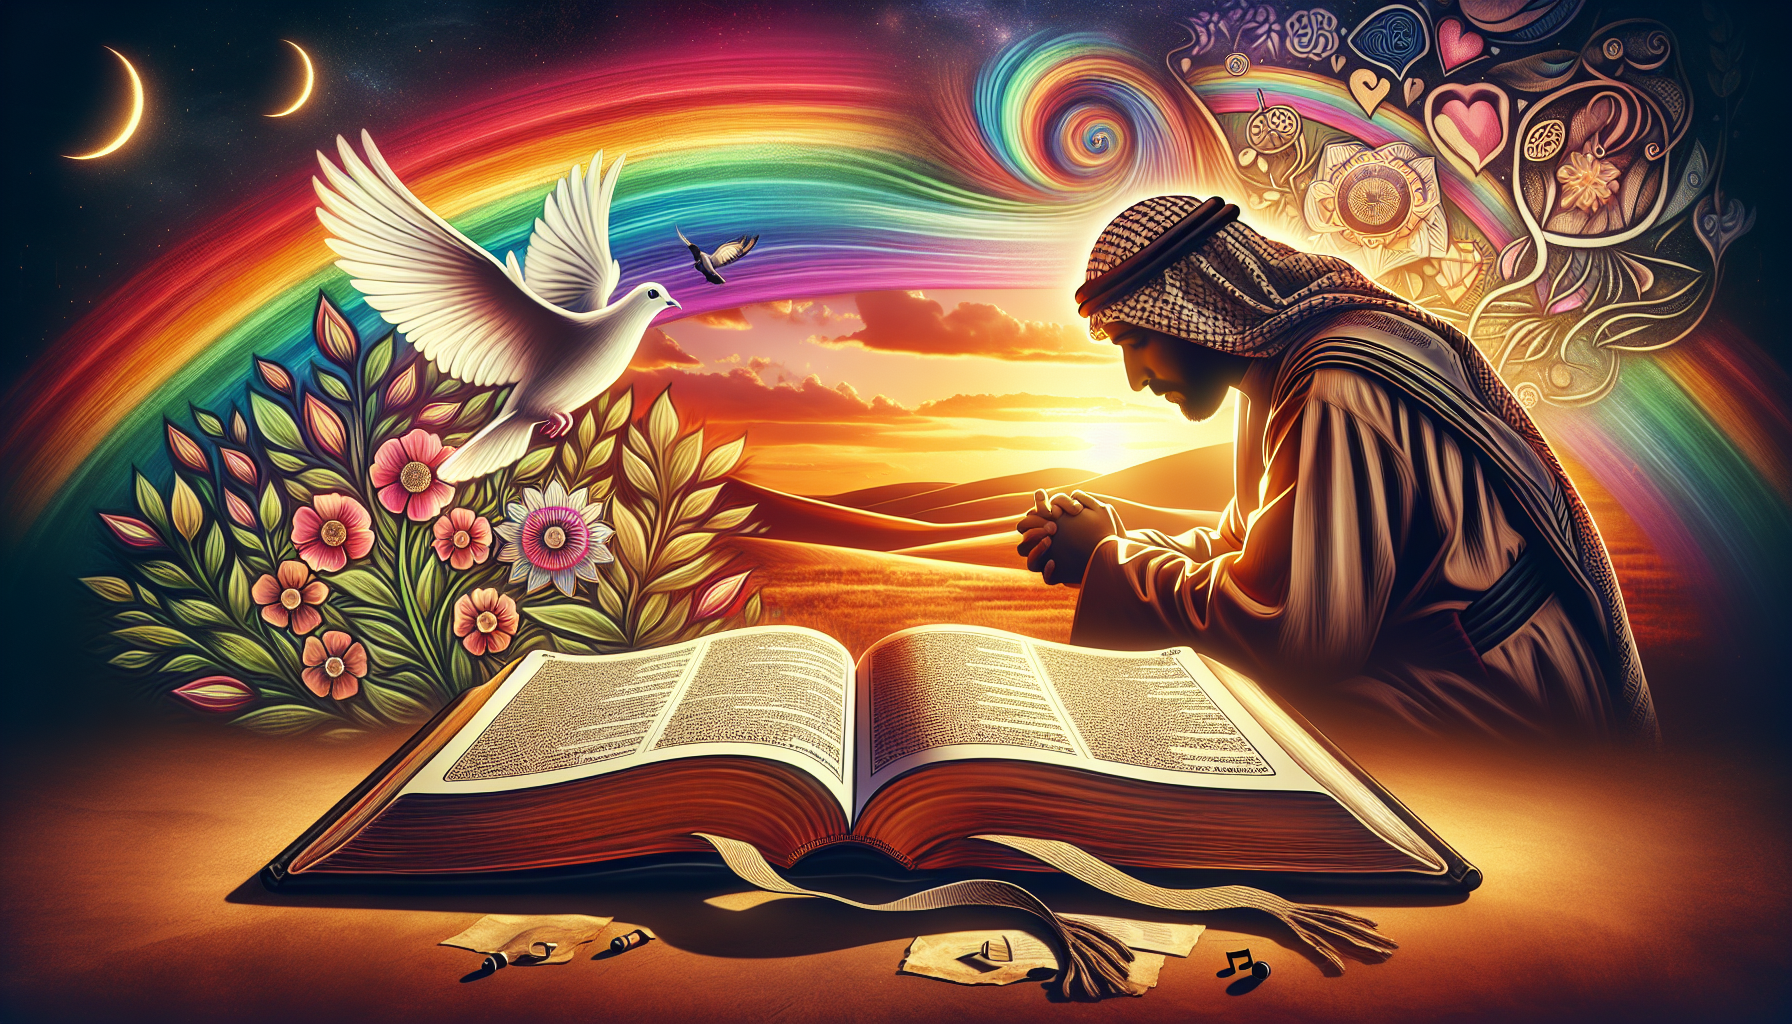 Una ilustración que muestra una Biblia abierta en un paisaje sereno al atardecer, con una luz cálida iluminando sus páginas. Alrededor de la Biblia, hay símbolos de esperanza y consuelo, como una palo